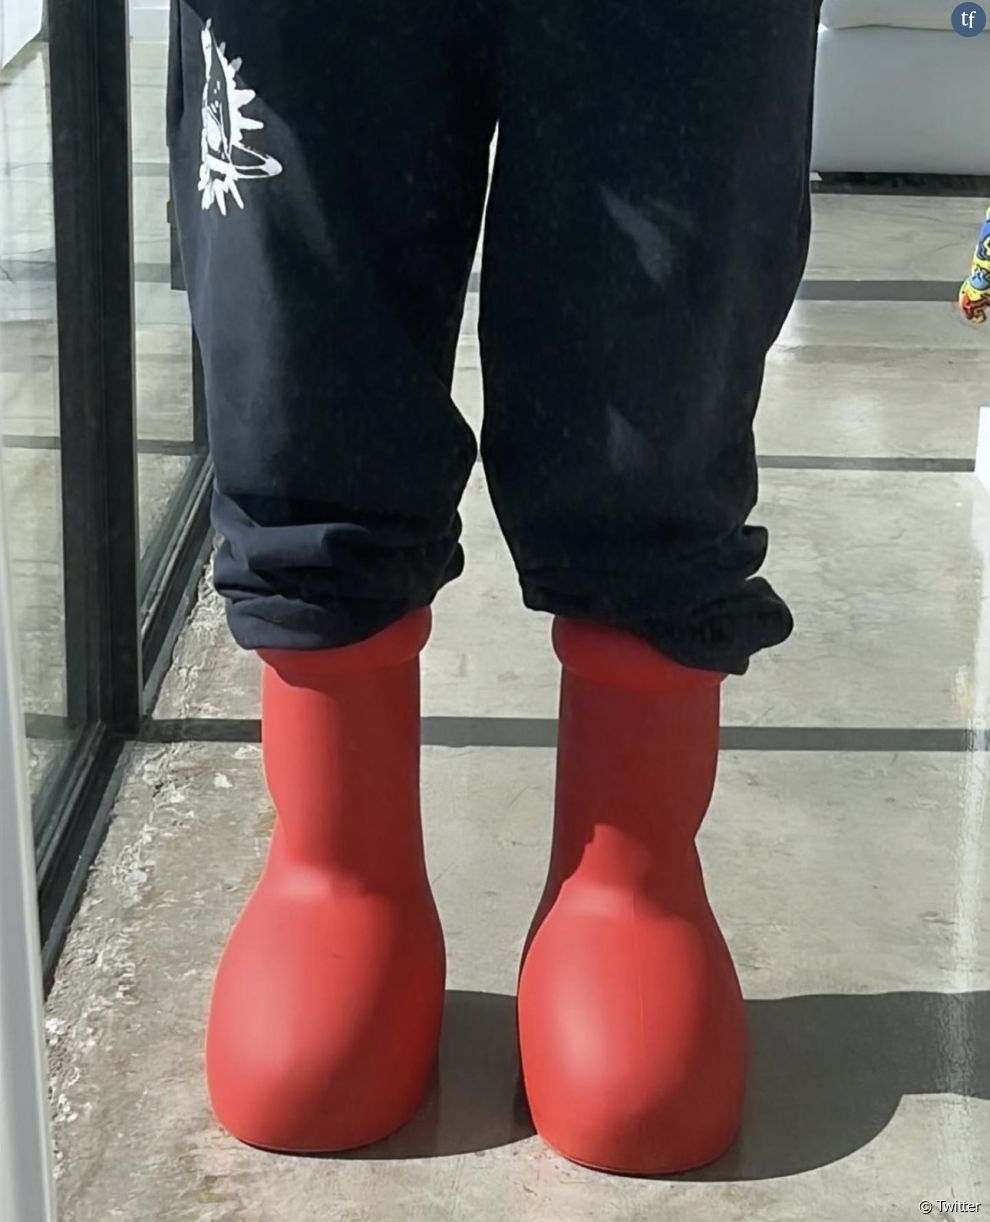 Big Red Boots. C&#039;est l&#039;intitulé de ces grosses bottes rouges imaginées par le collectif artistique new-yorkais MSCHF, devenues ces dernières heures étonnamment virales sur les réseaux sociaux.